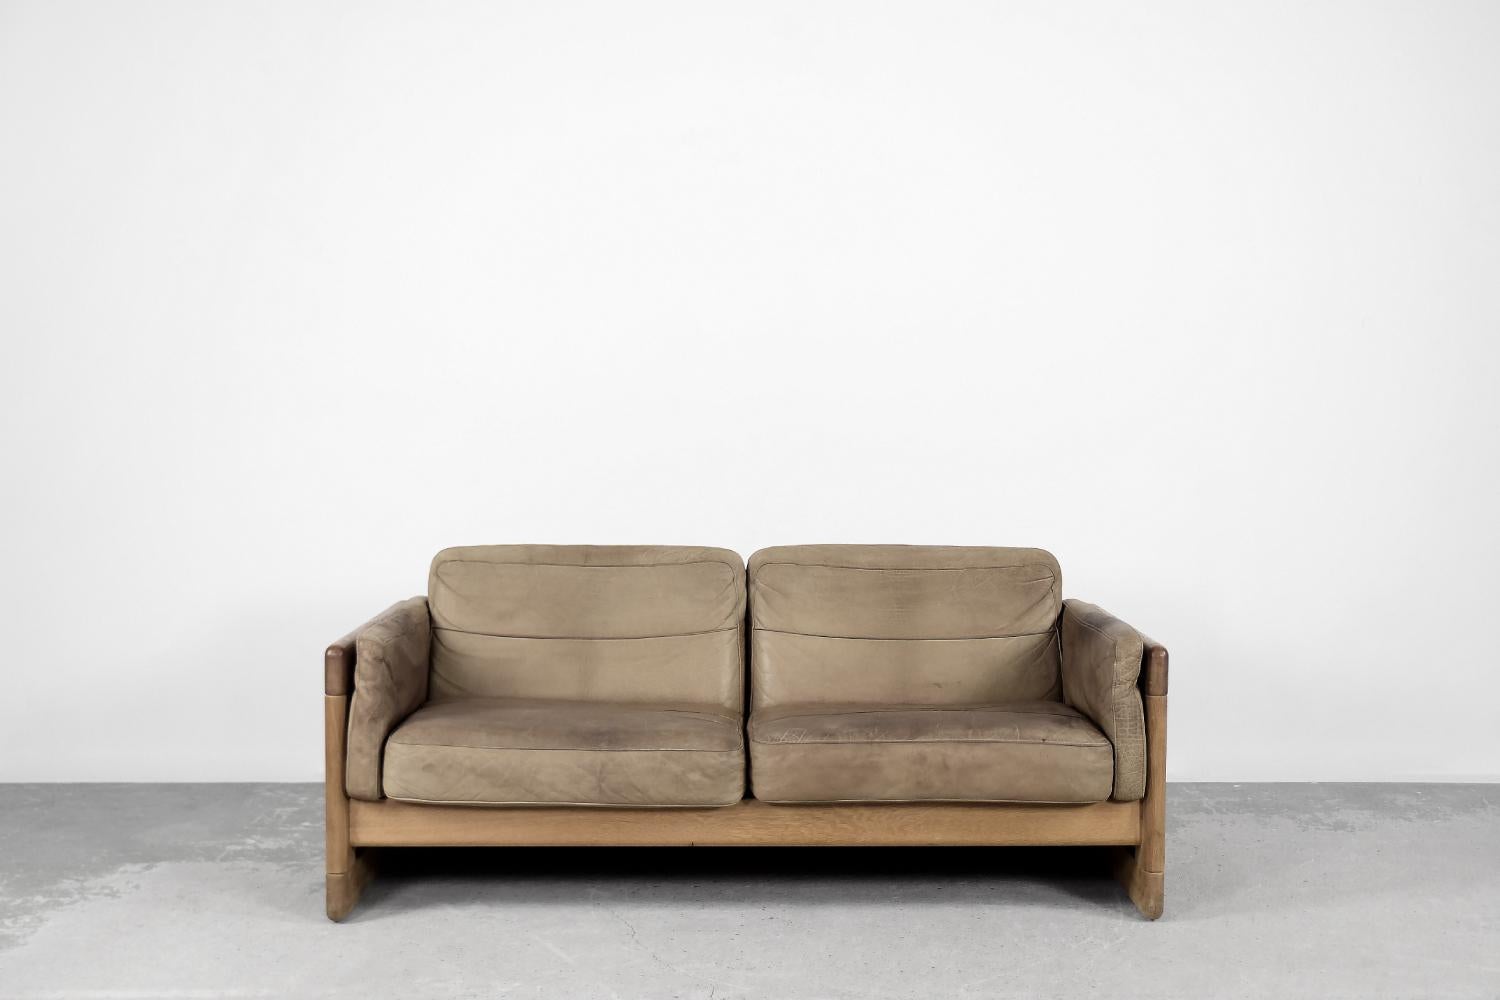 Ce canapé deux places a été produit en Scandinavie dans les années 1970. Le cadre est fabriqué en bois de chêne massif de couleur naturelle. Les coussins sont recouverts de cuir naturel dans une nuance de brun café. Le canapé est équipé de coussins